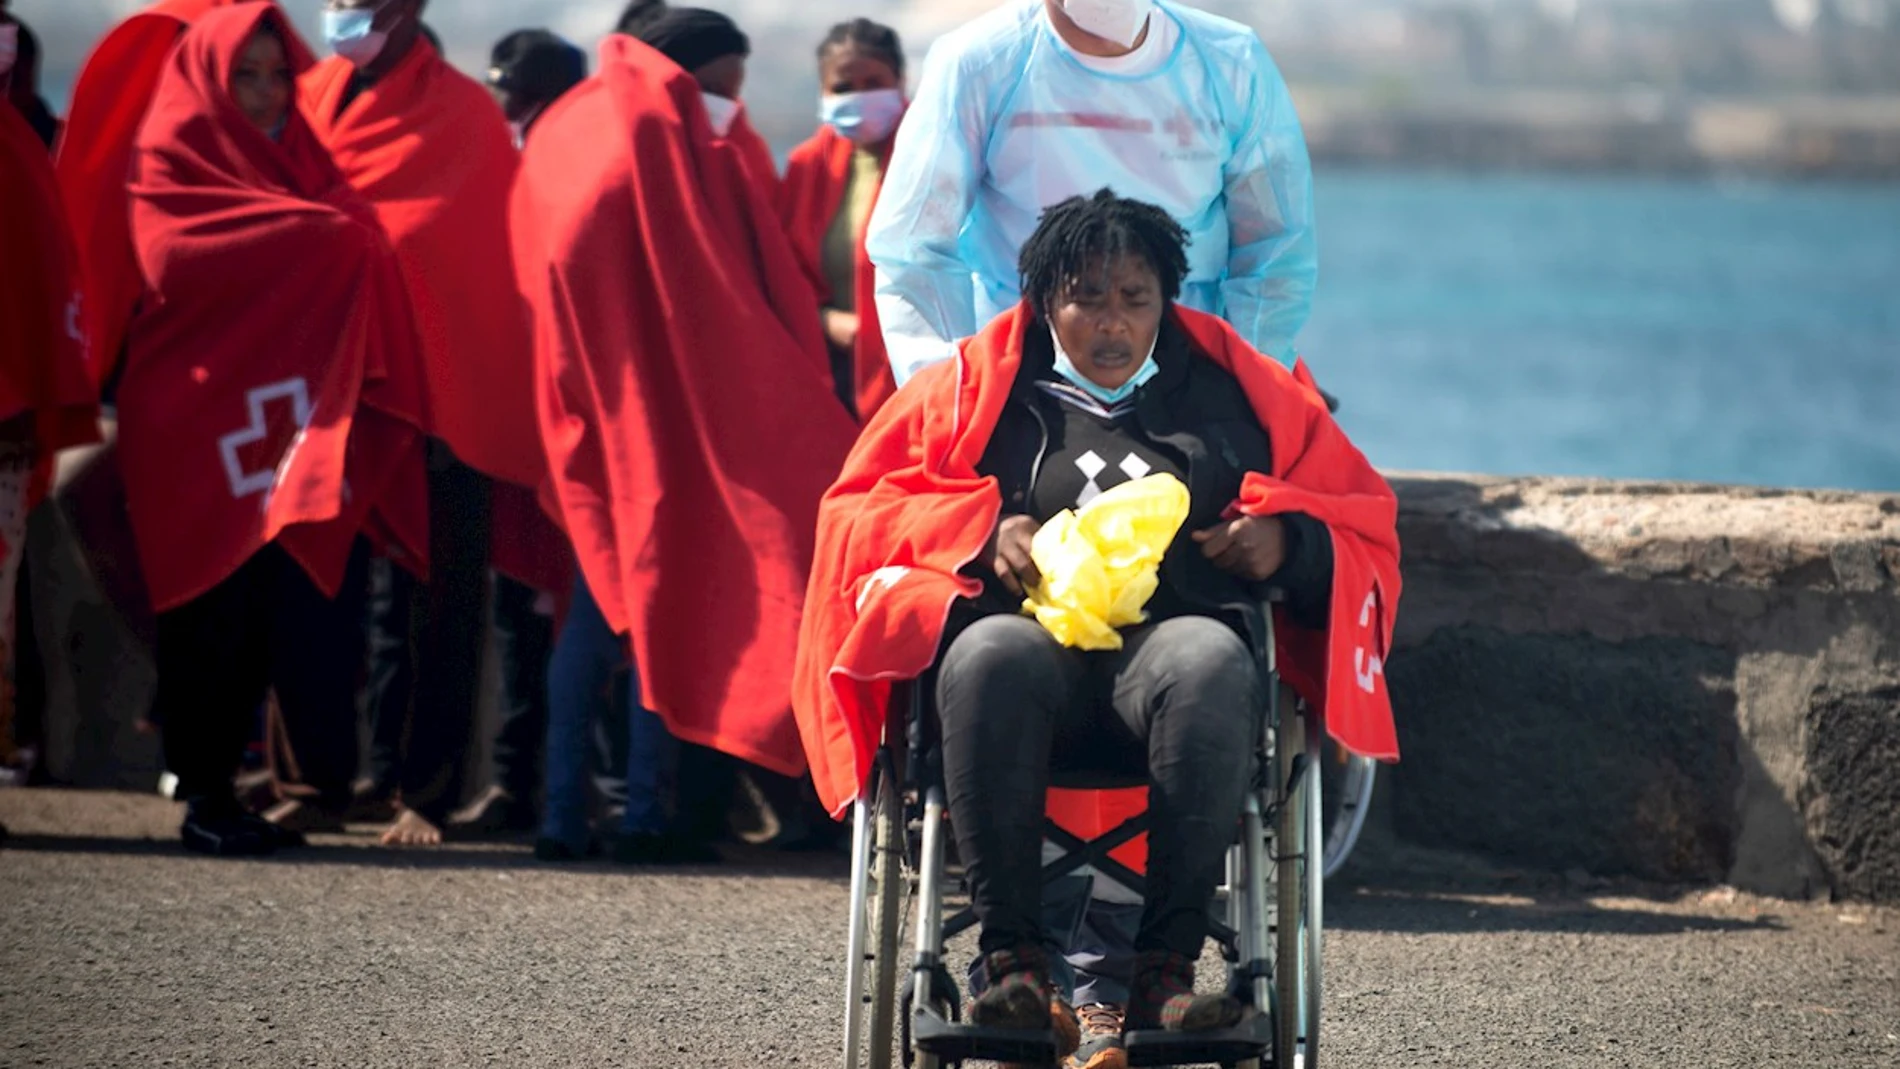  Salvamento Marítimo ha trasladado este lunes al puerto de Arrecife, en Lanzarote, a 54 inmigrantes de origen subsaharianos rescatados de una lancha neumática a unos 65 kilómetros al sureste de la isla. Se trata de 40 hombres, once mujeres y tres niños